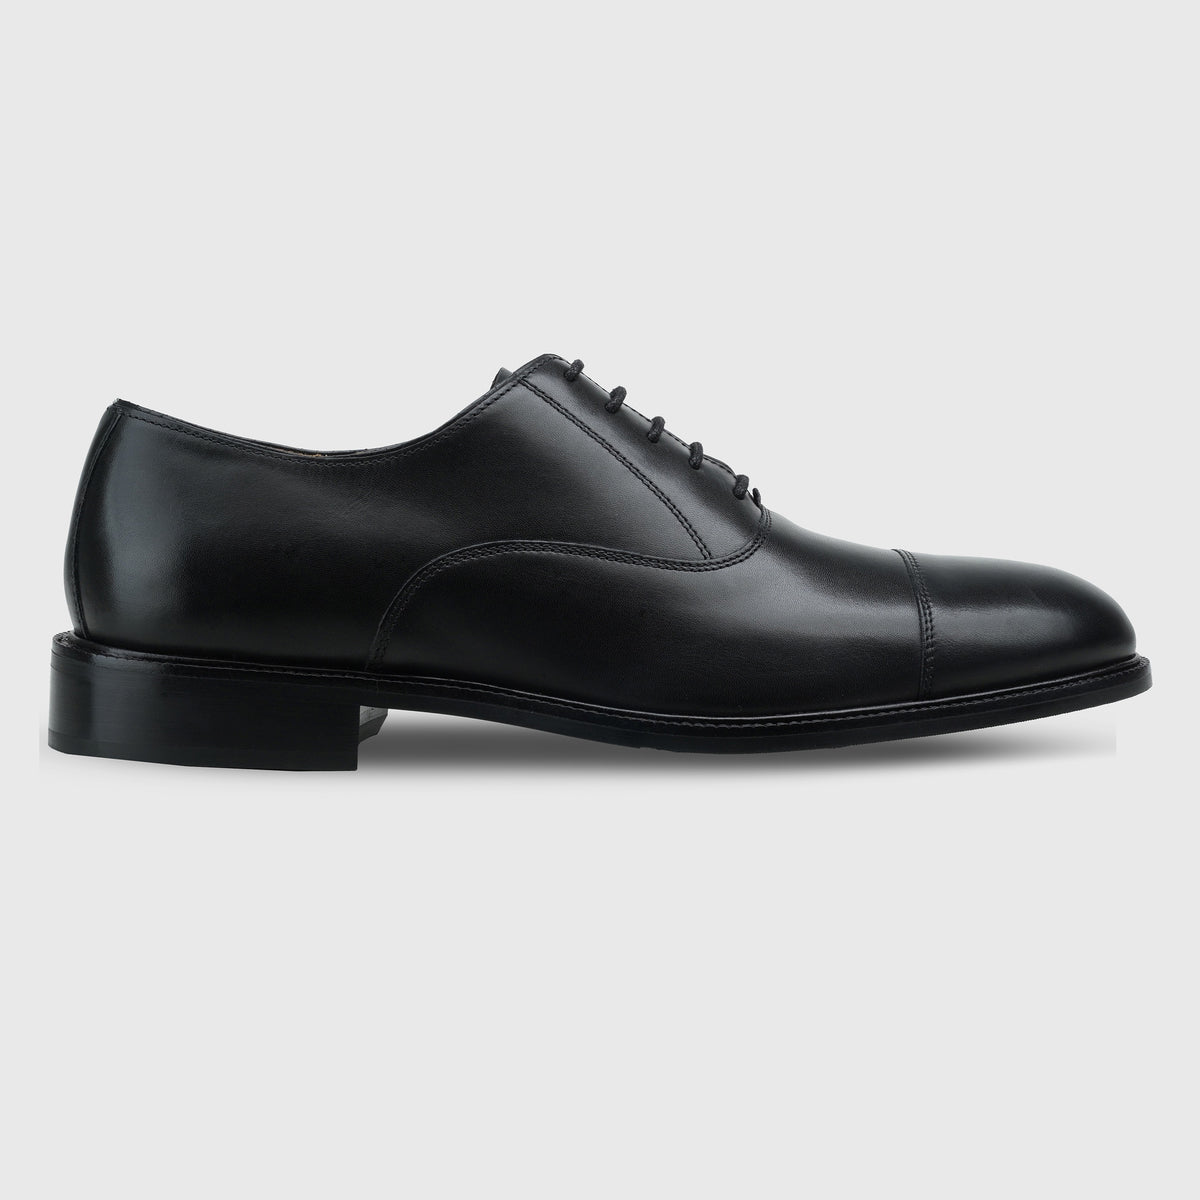 Captoe Oxfords Black 6187 - PLNK Shoes